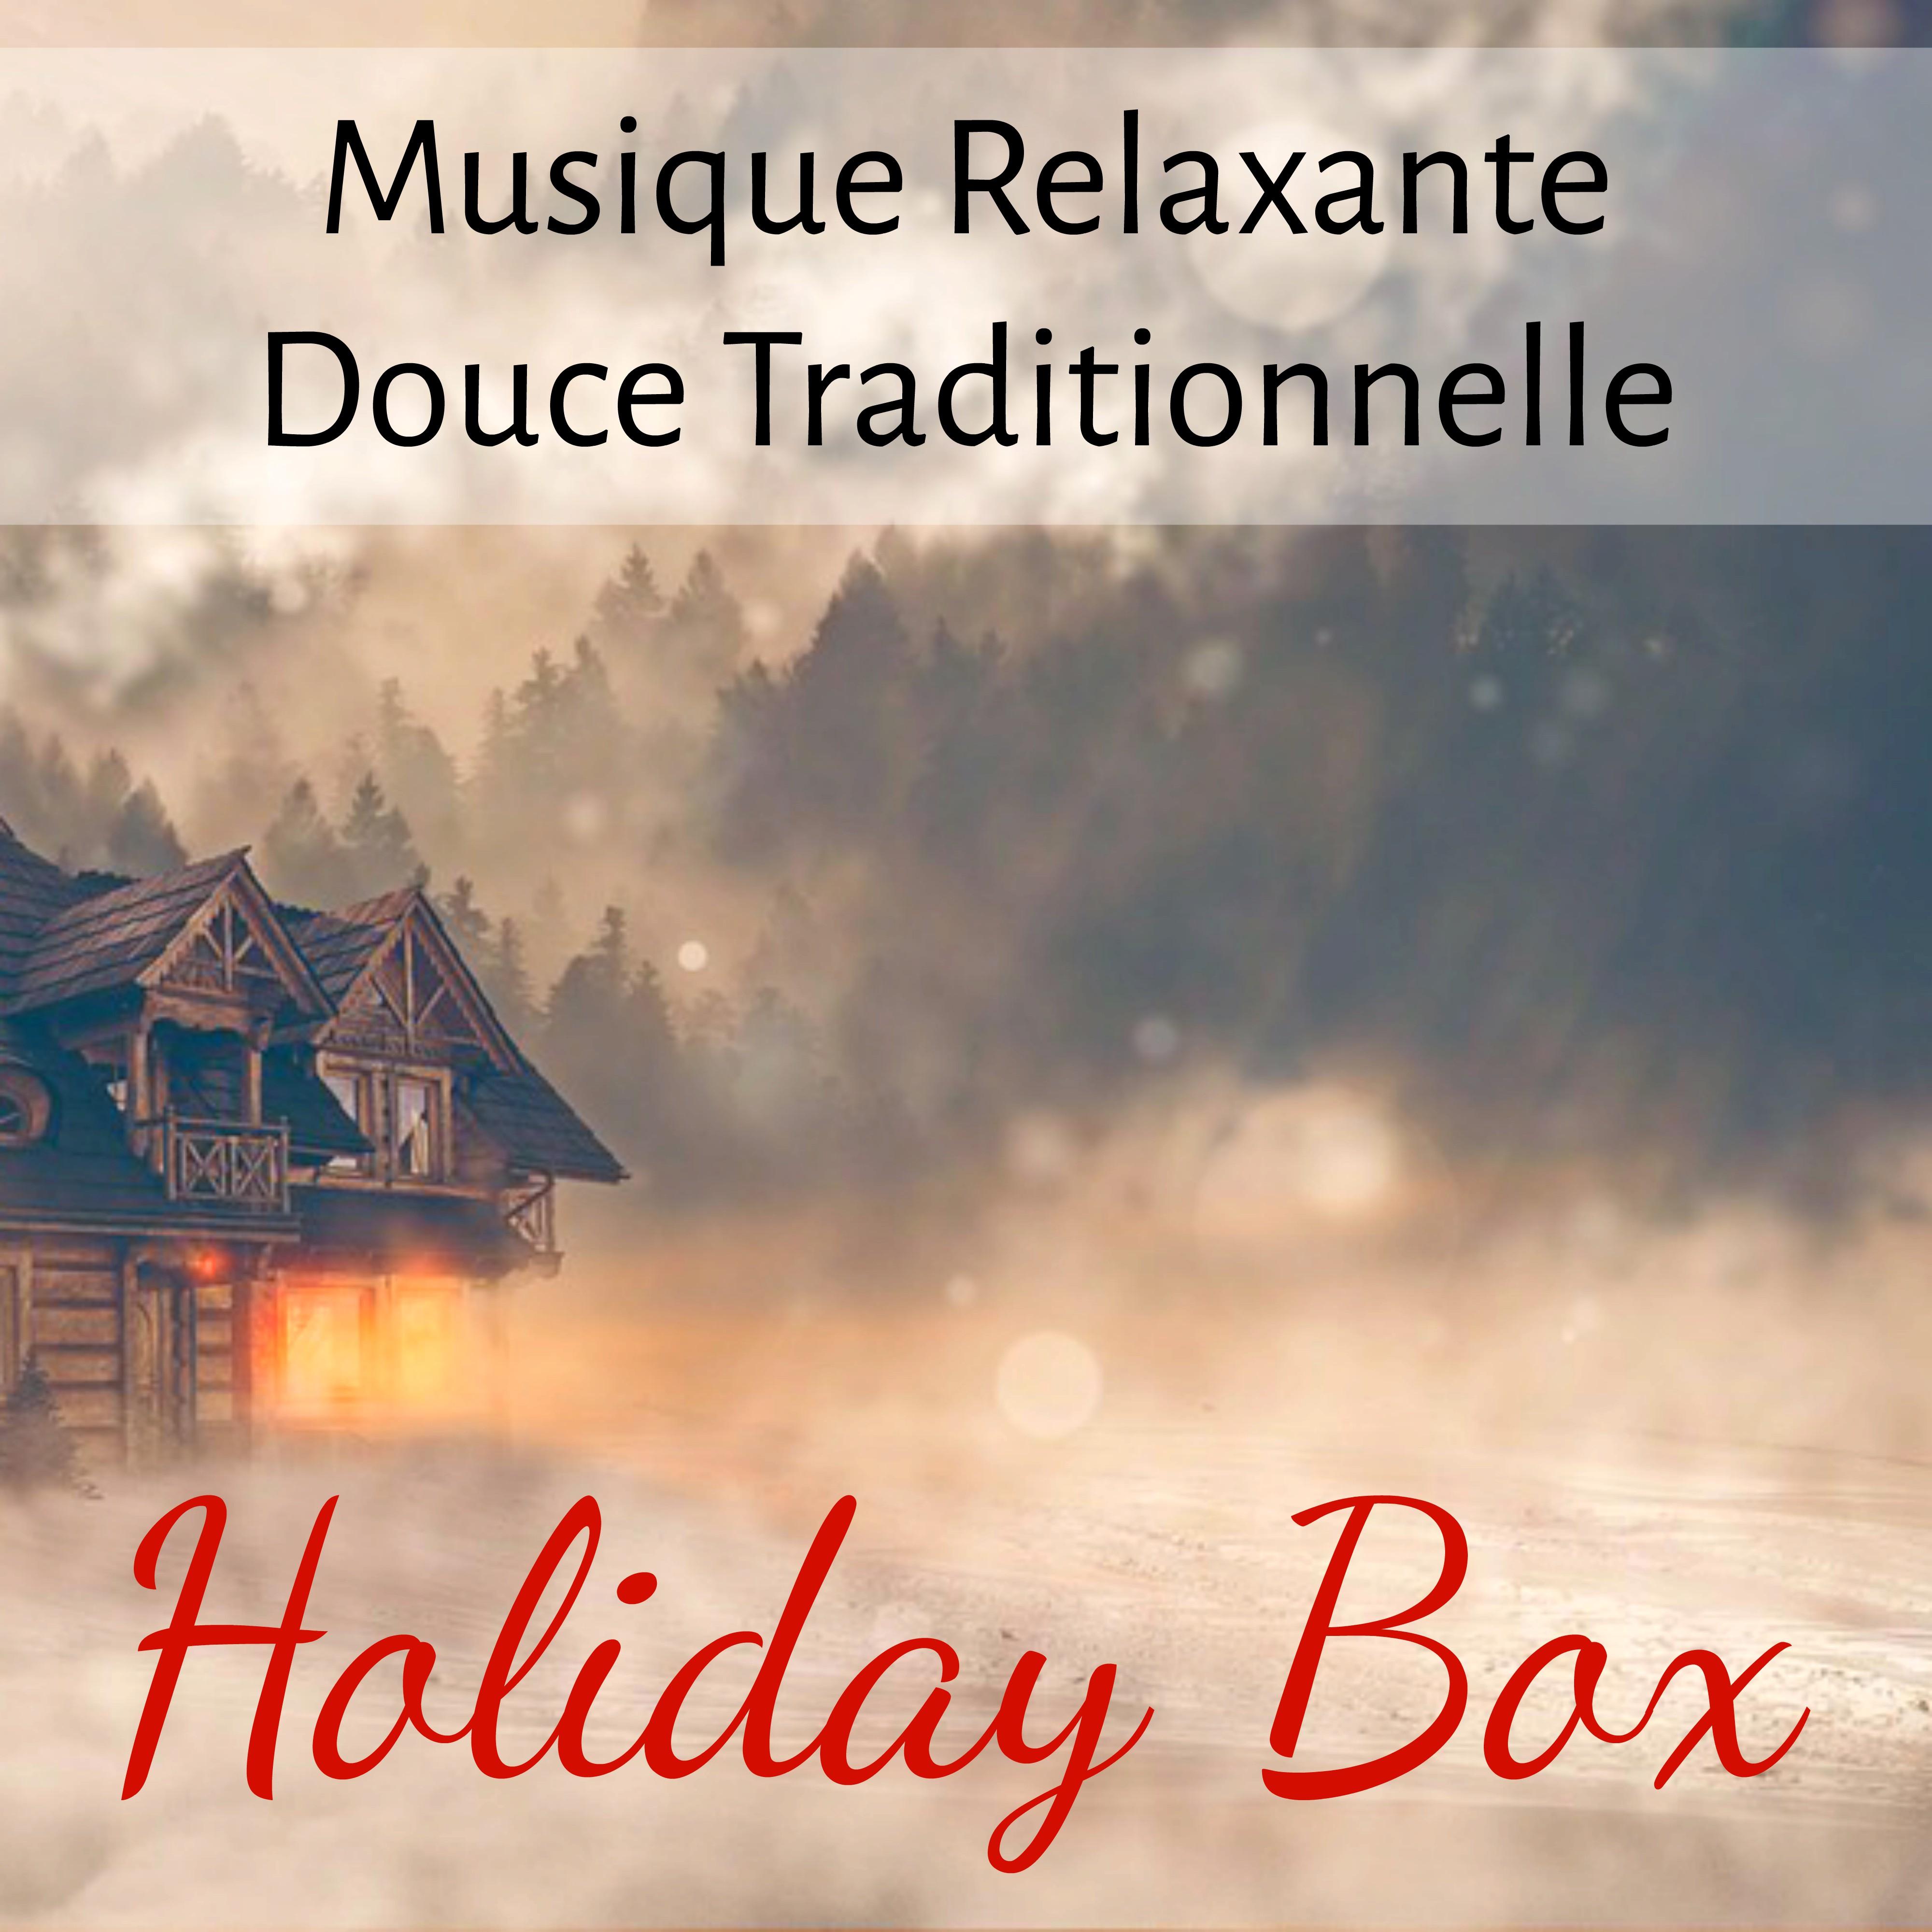 Holiday Box  Musique Relaxante Douce Traditionnelle pour Bonne Anne e Vacances de No l avec Sons de la Nature Instrumentaux Binauraux